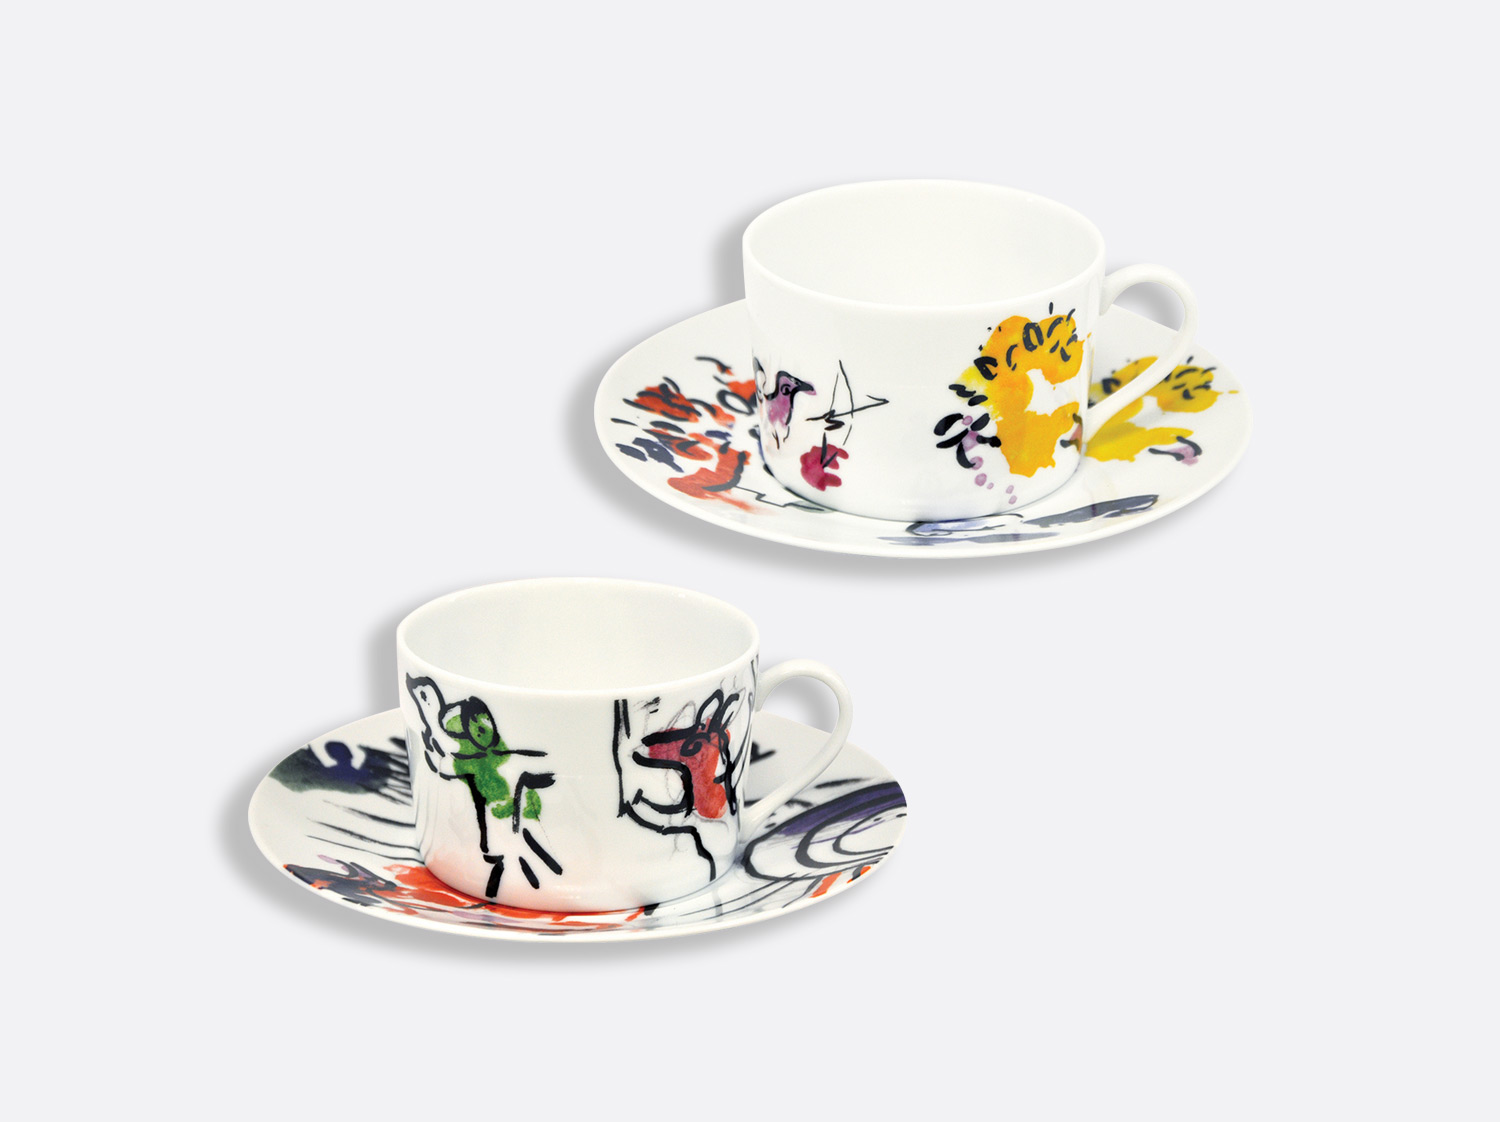 Coffret de 2 tasses et soucoupes déjeuner assorties 25 cl en porcelaine de la collection Les vitraux d hadassah Bernardaud